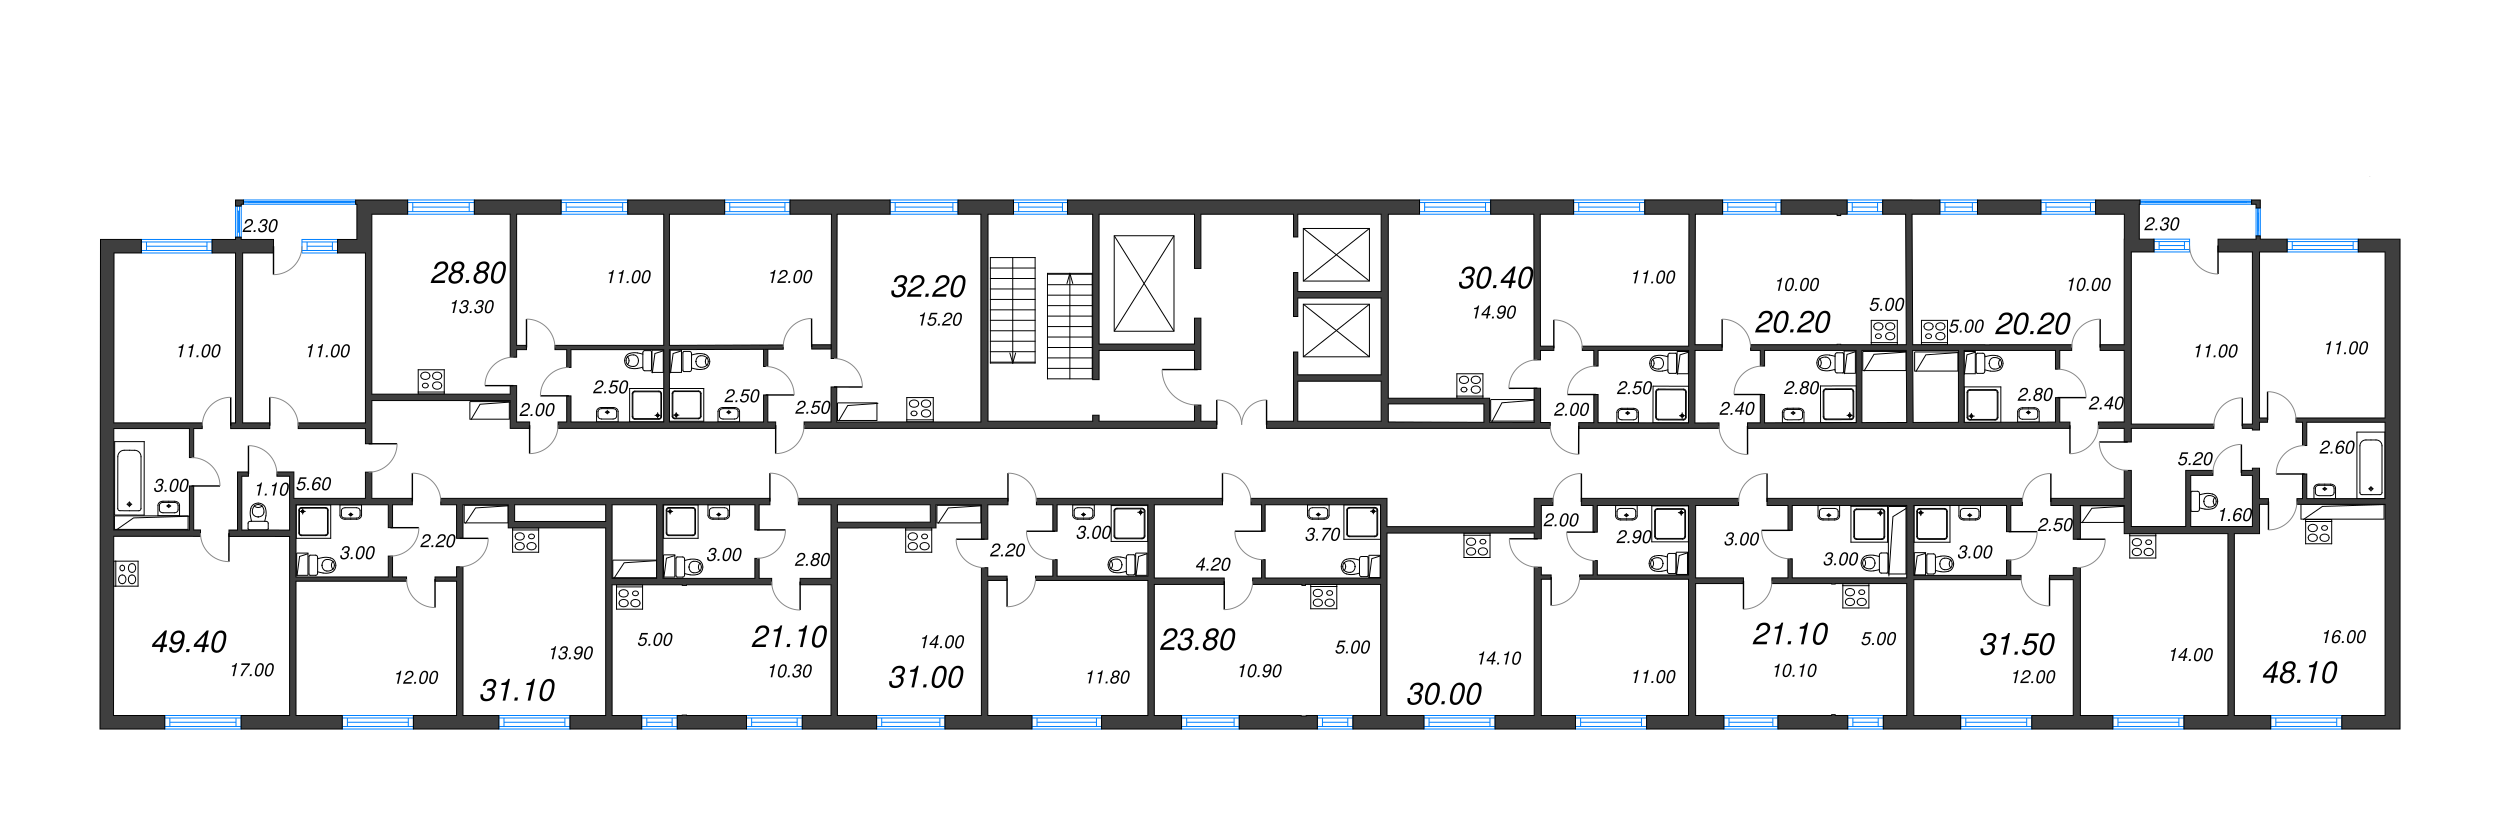 2-комнатная (Евро) квартира, 32.2 м² в ЖК "ЛСР. Ржевский парк" - планировка этажа